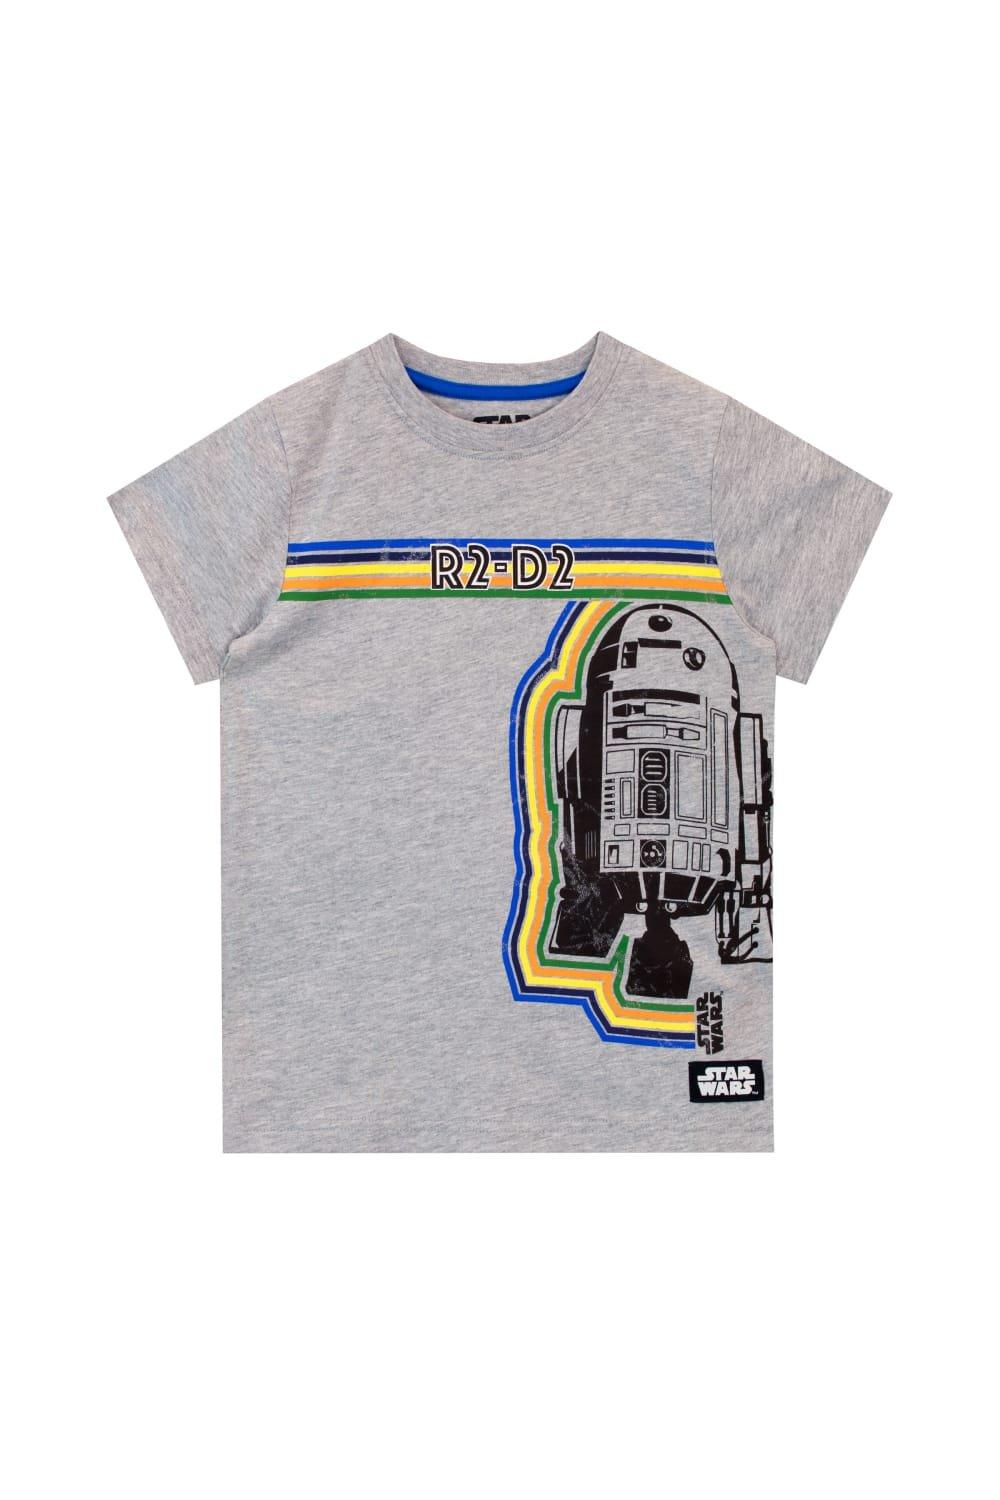 Astromech Droid R2-D2 T-Shirt